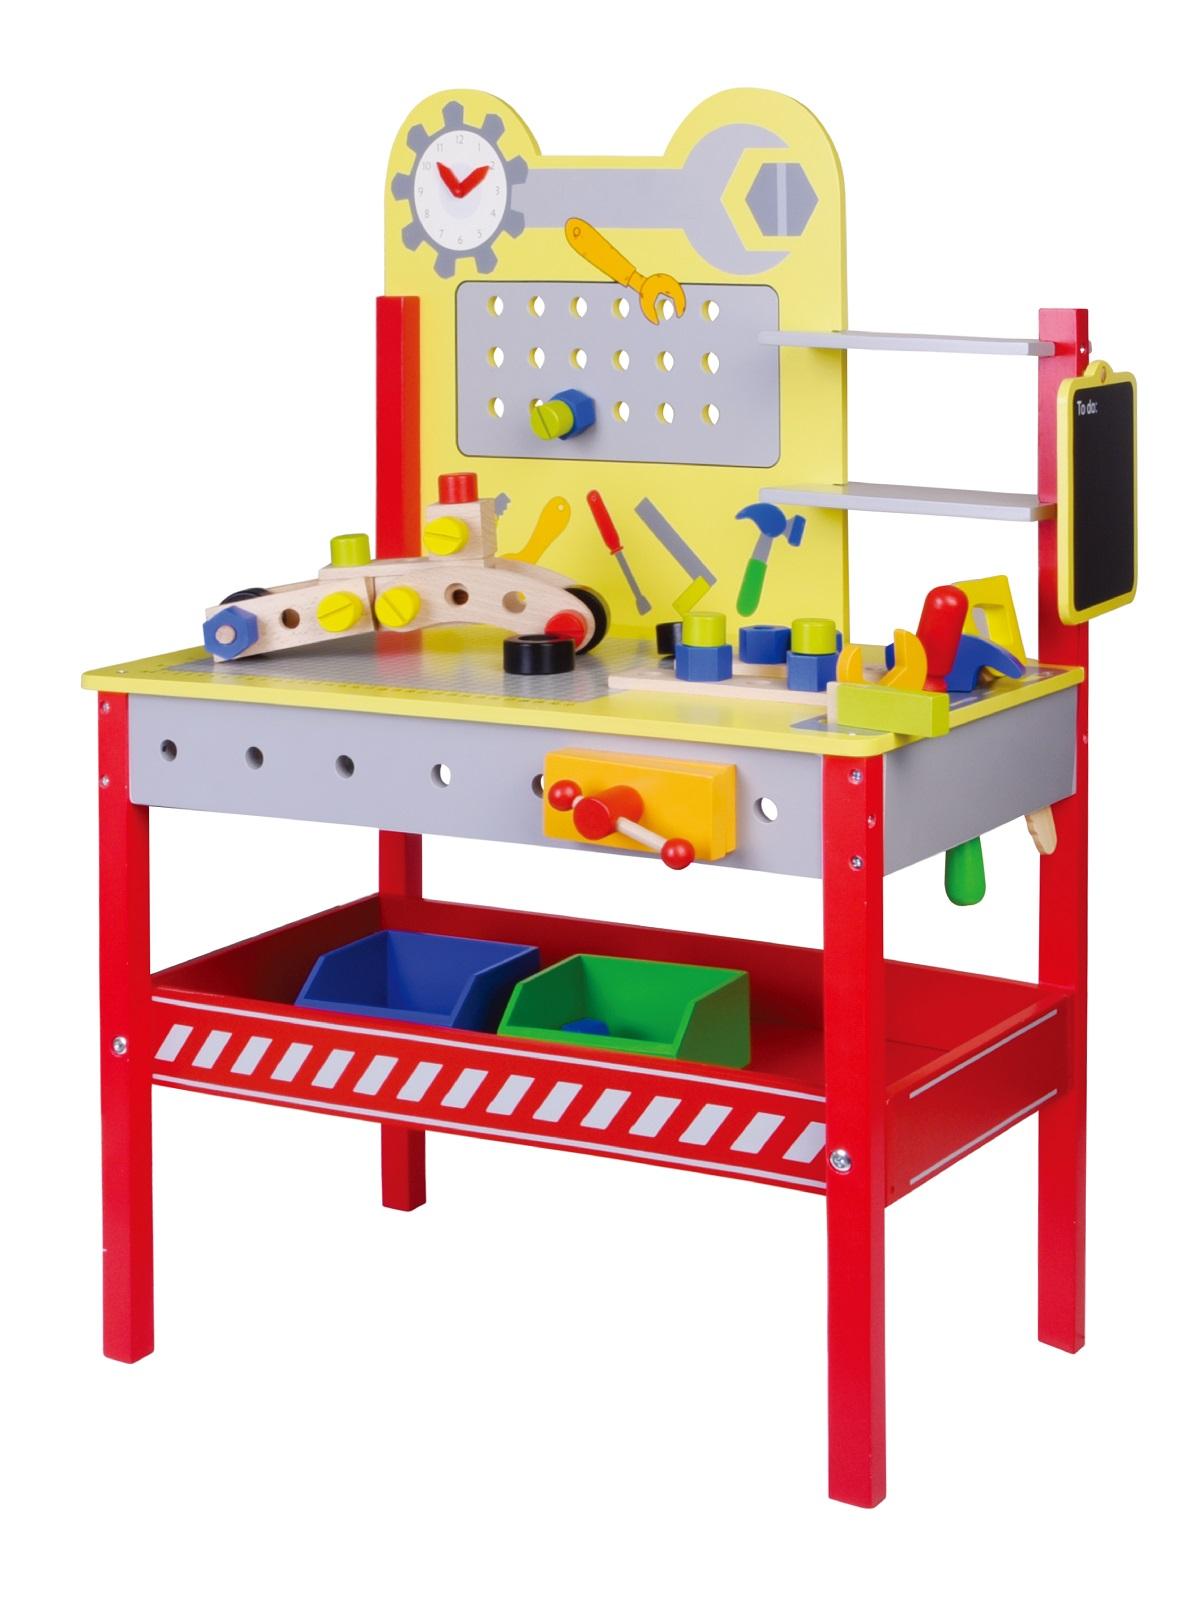 שולחן כלי עבודה לילדים - כלי עבודה לילדים